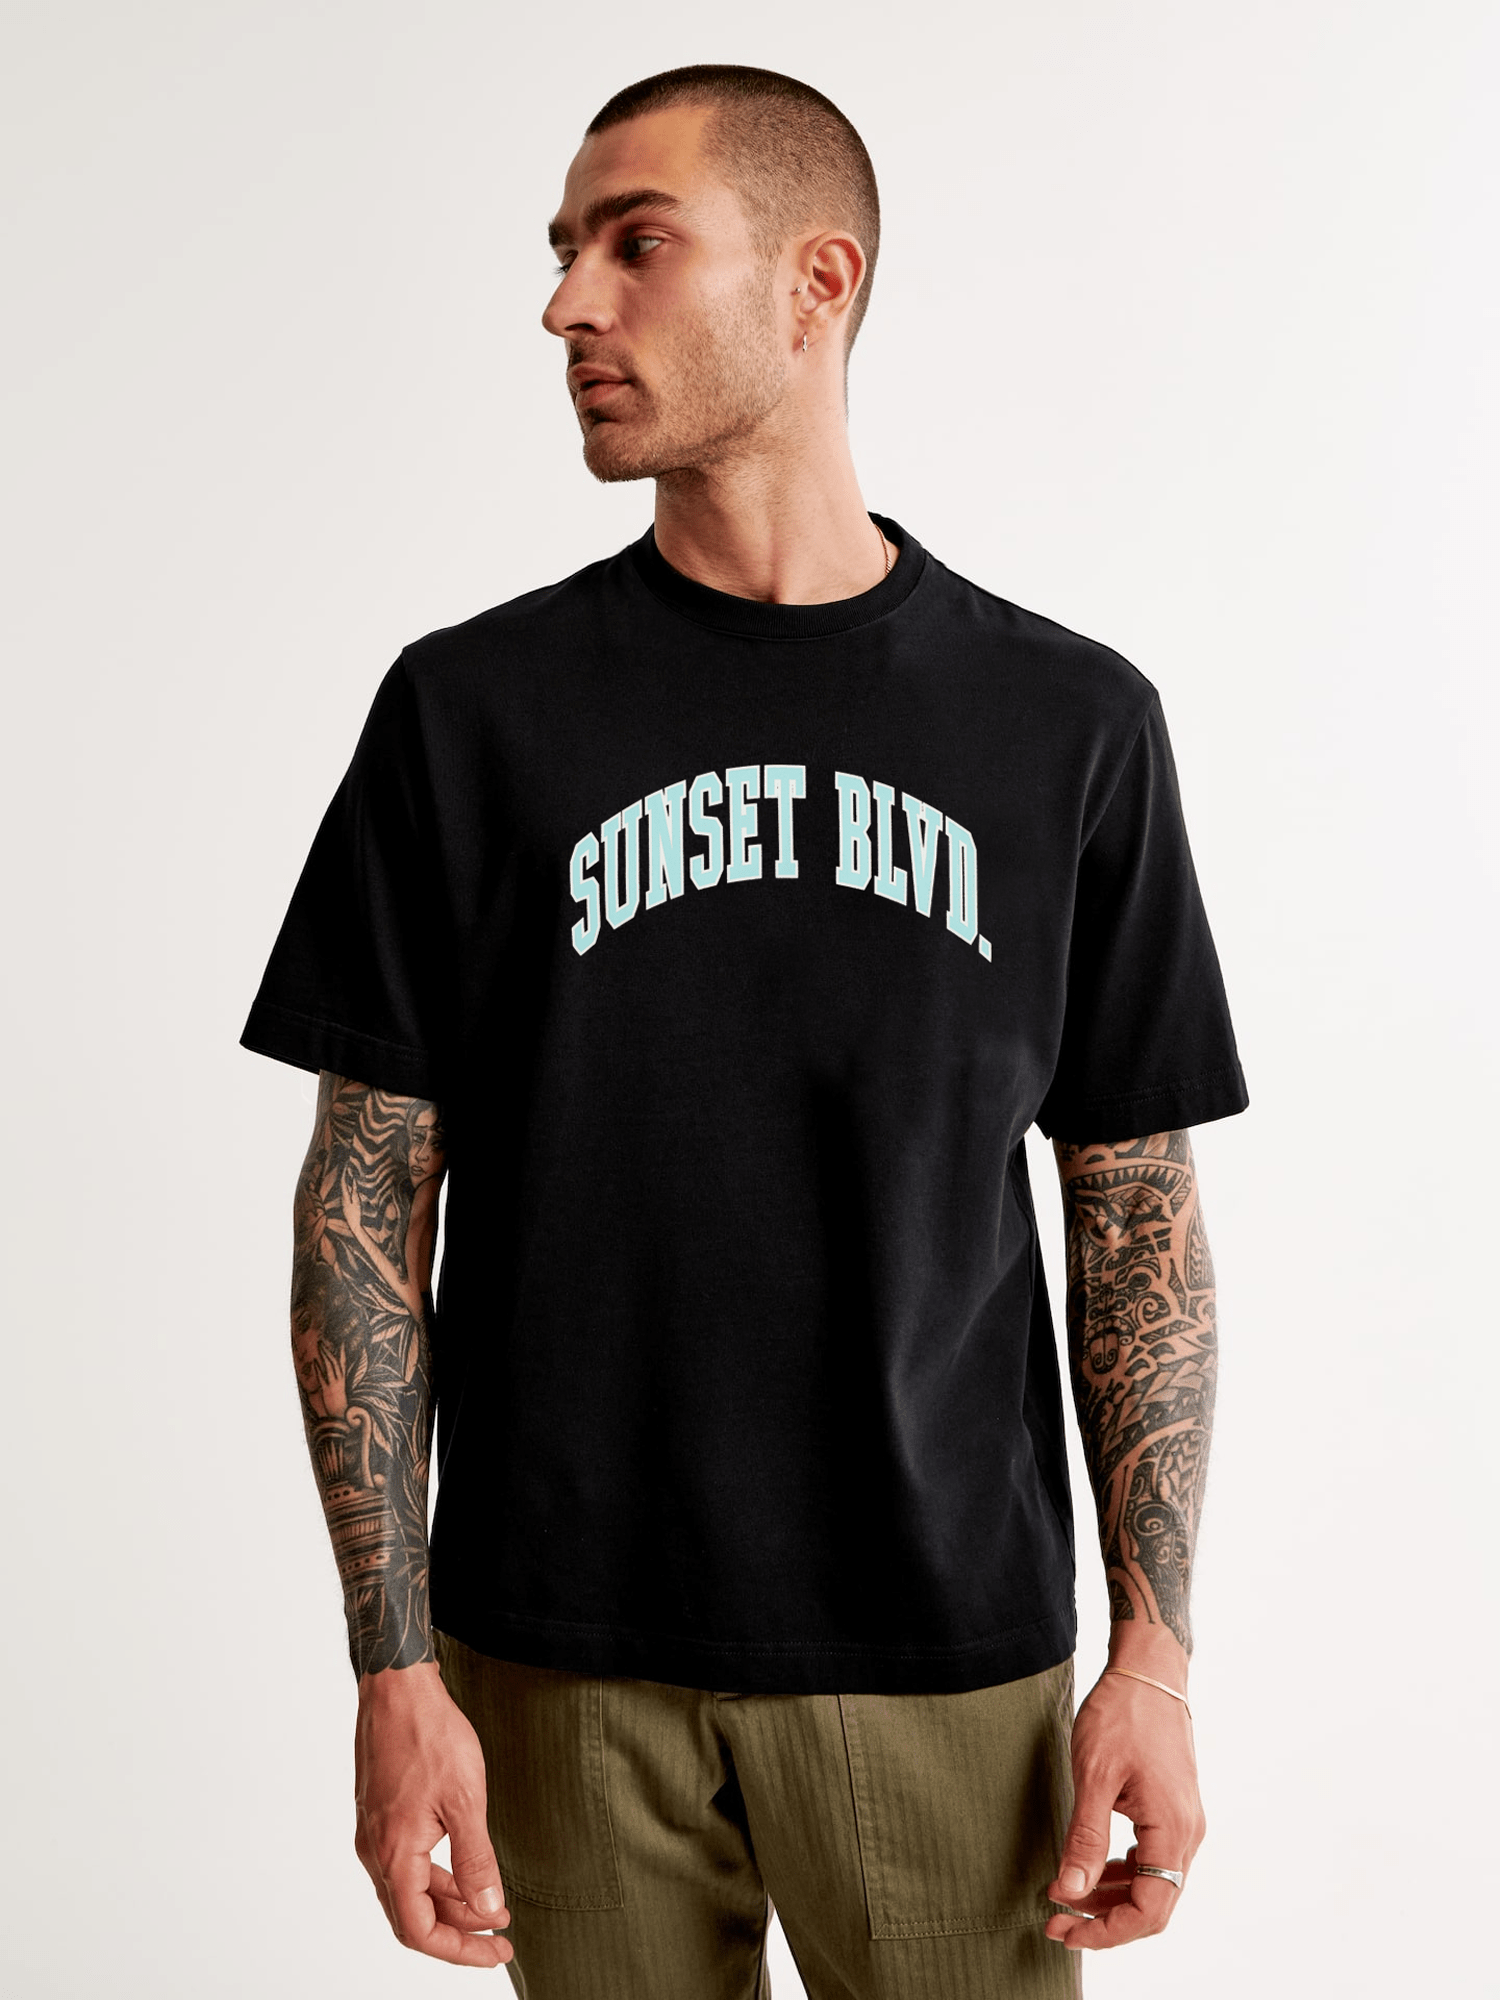 Stone Harbor T-shirts MEN'S BLACK LOOSE-FIT T-SHIRT